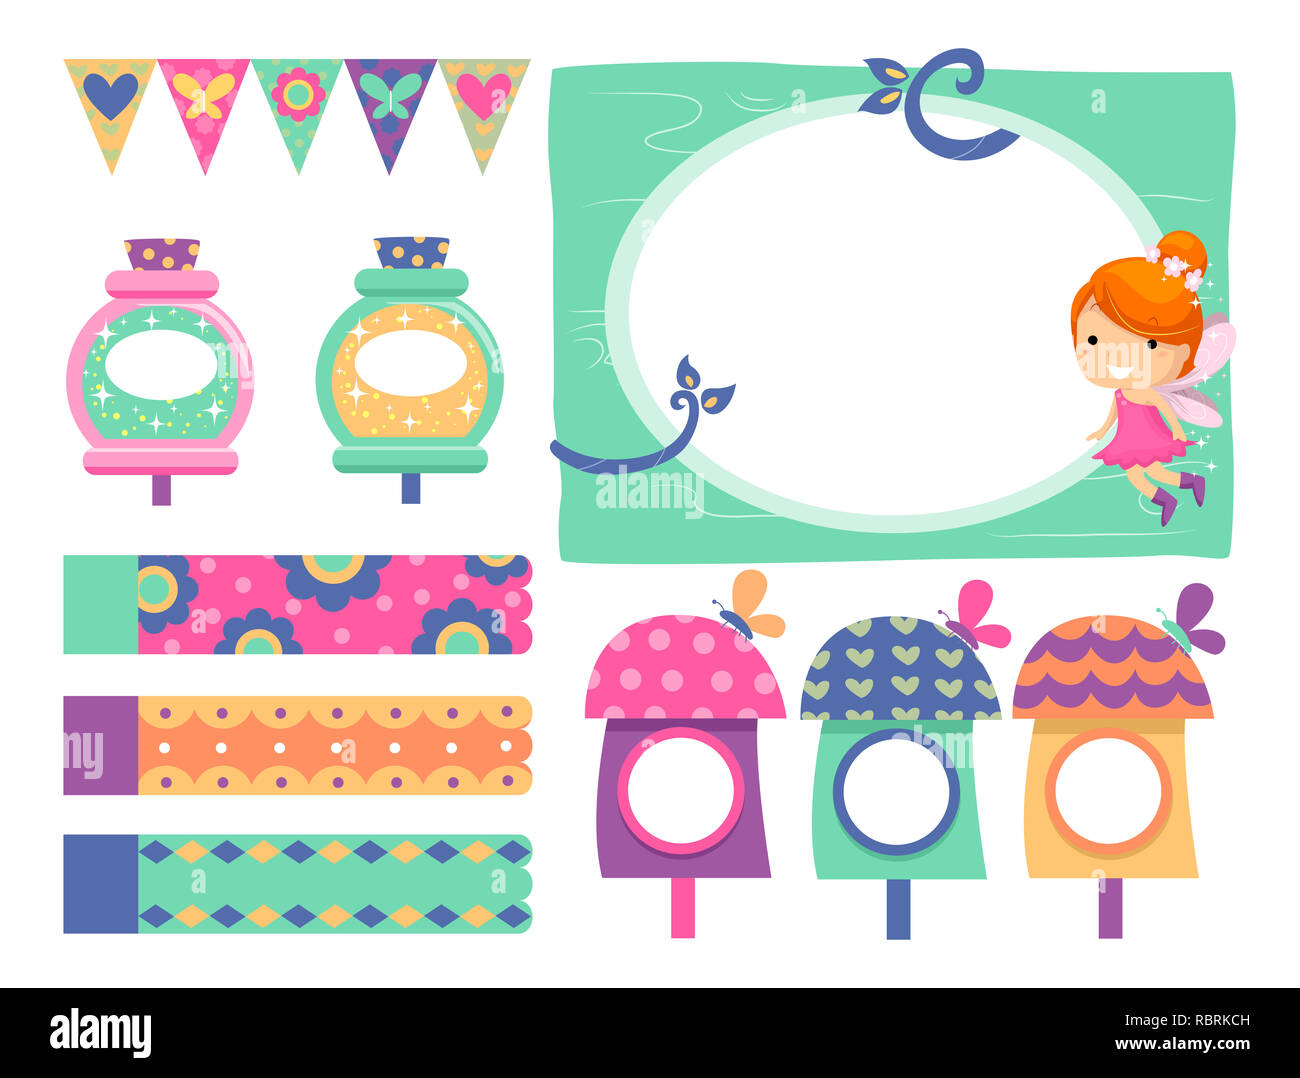 Abbildung: Fairy Elemente mit Rahmen, nette Häuser, Banner, Zaubertrank und Wimpel Banner Stockfoto